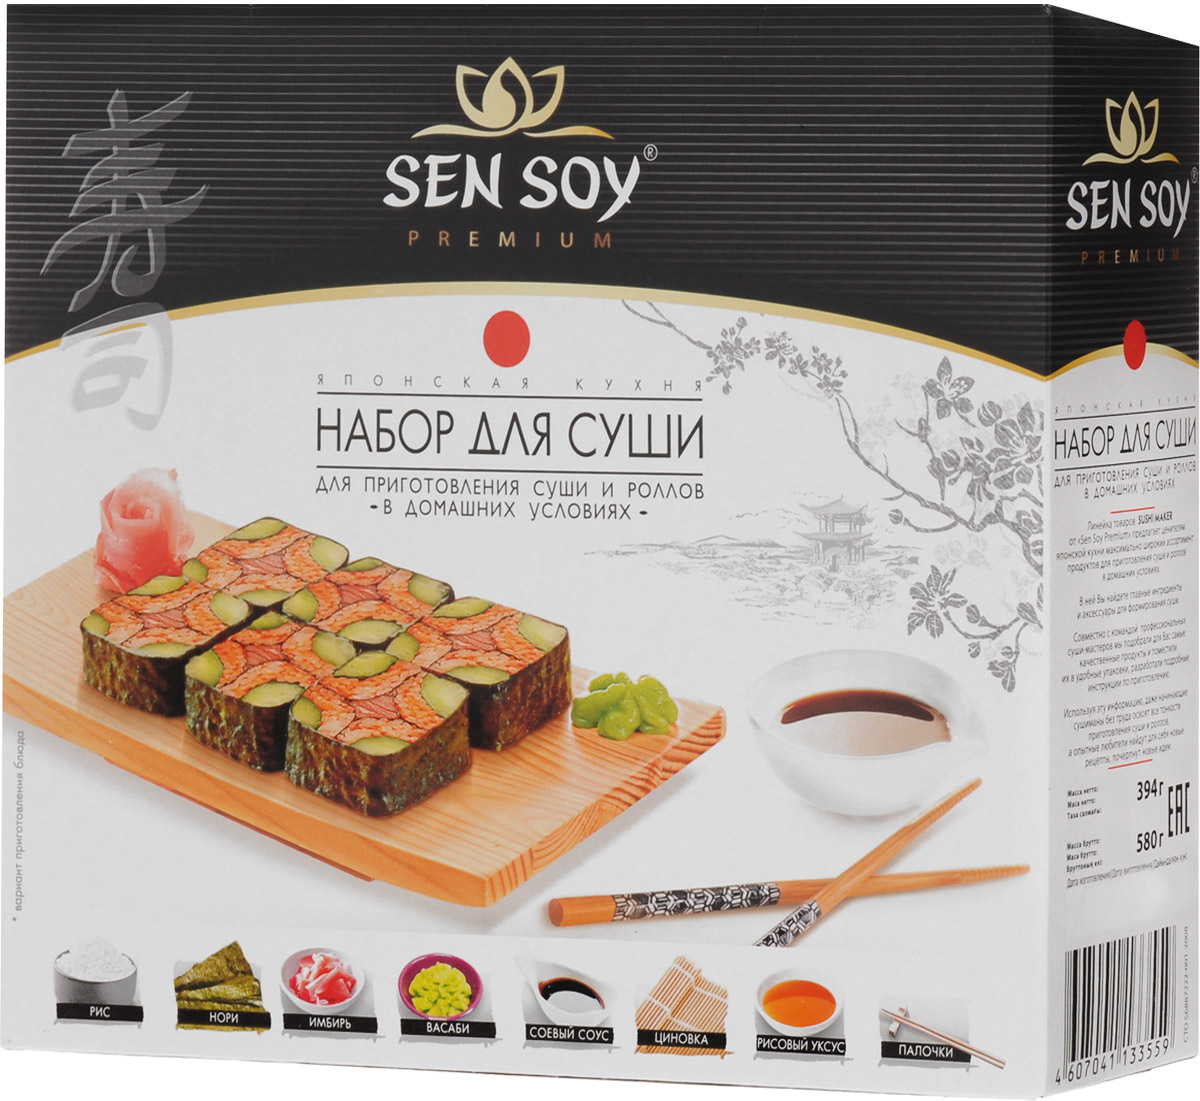 Как приготовить суши и роллы | Wiki | 😄Великий из бродячих псов😄 Amino